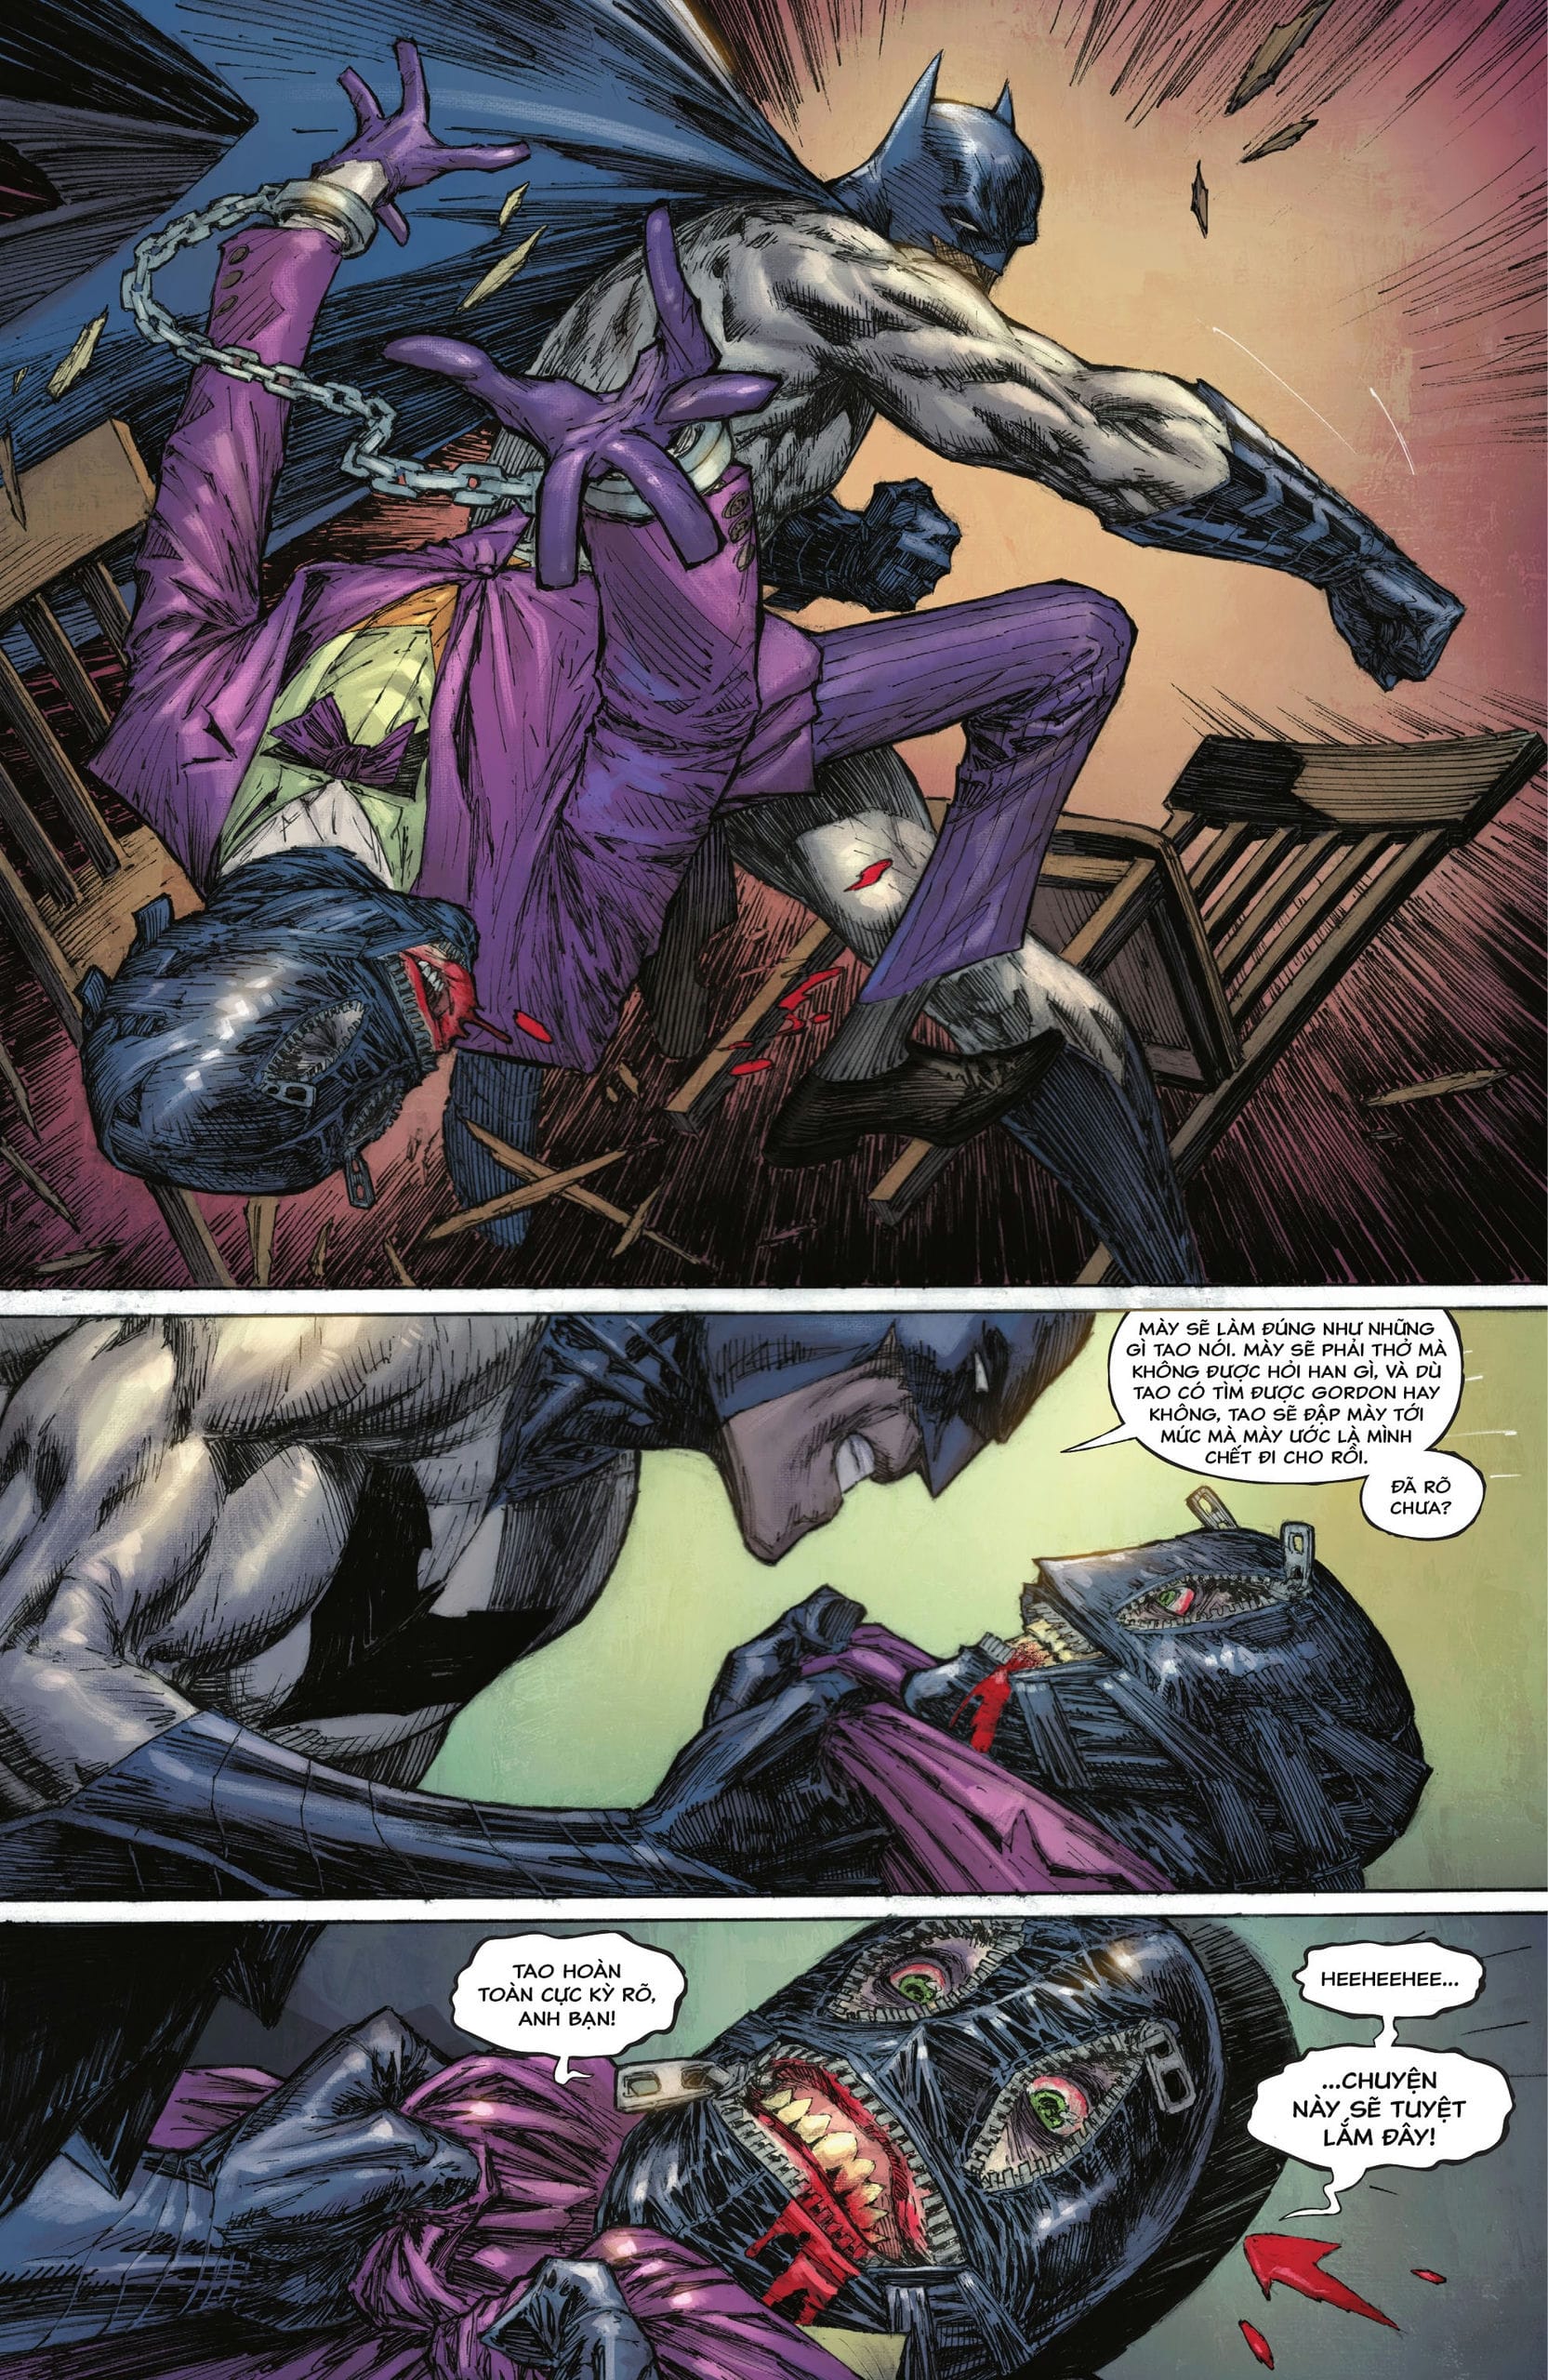 https://langgeek.net/wp-content/webpc-passthru.php?src=https://langgeek.net/wp-content/uploads/2023/01/Batman-The-Joker-The-Deadly-Duo-2022-003-018.jpg&nocache=1